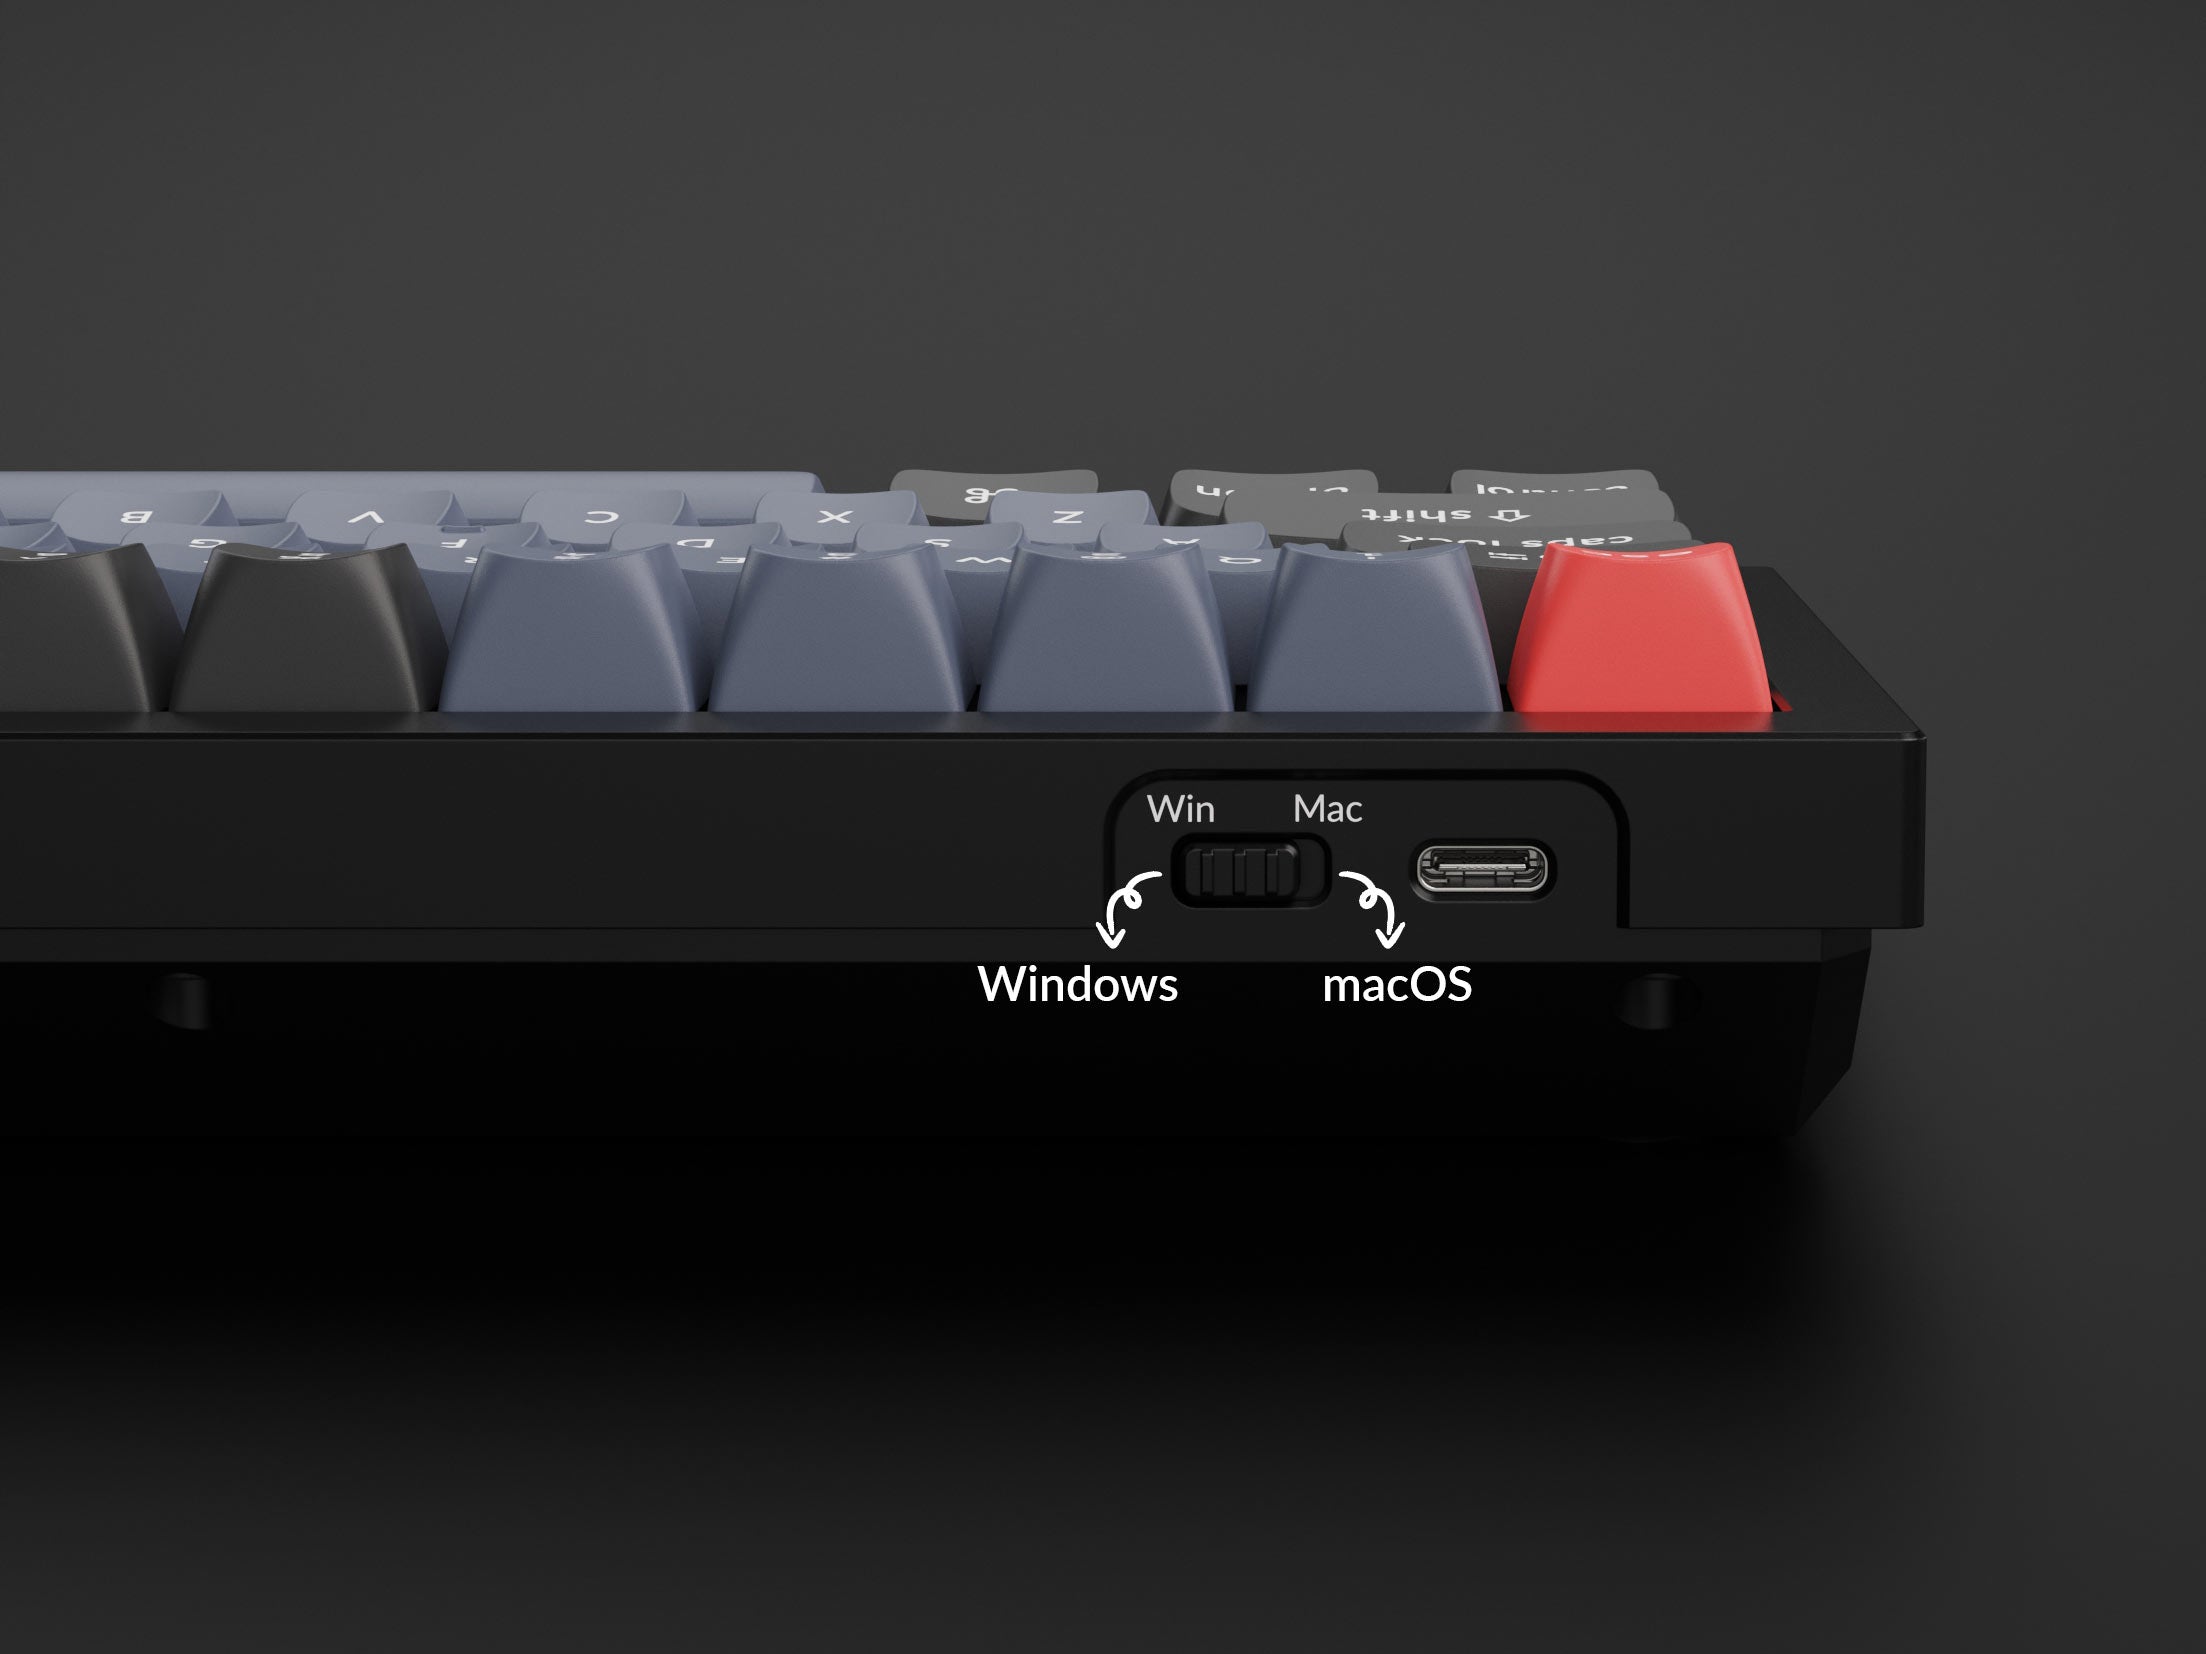 Keychron Q7 70% Layout Custom Mechanical Keyboard